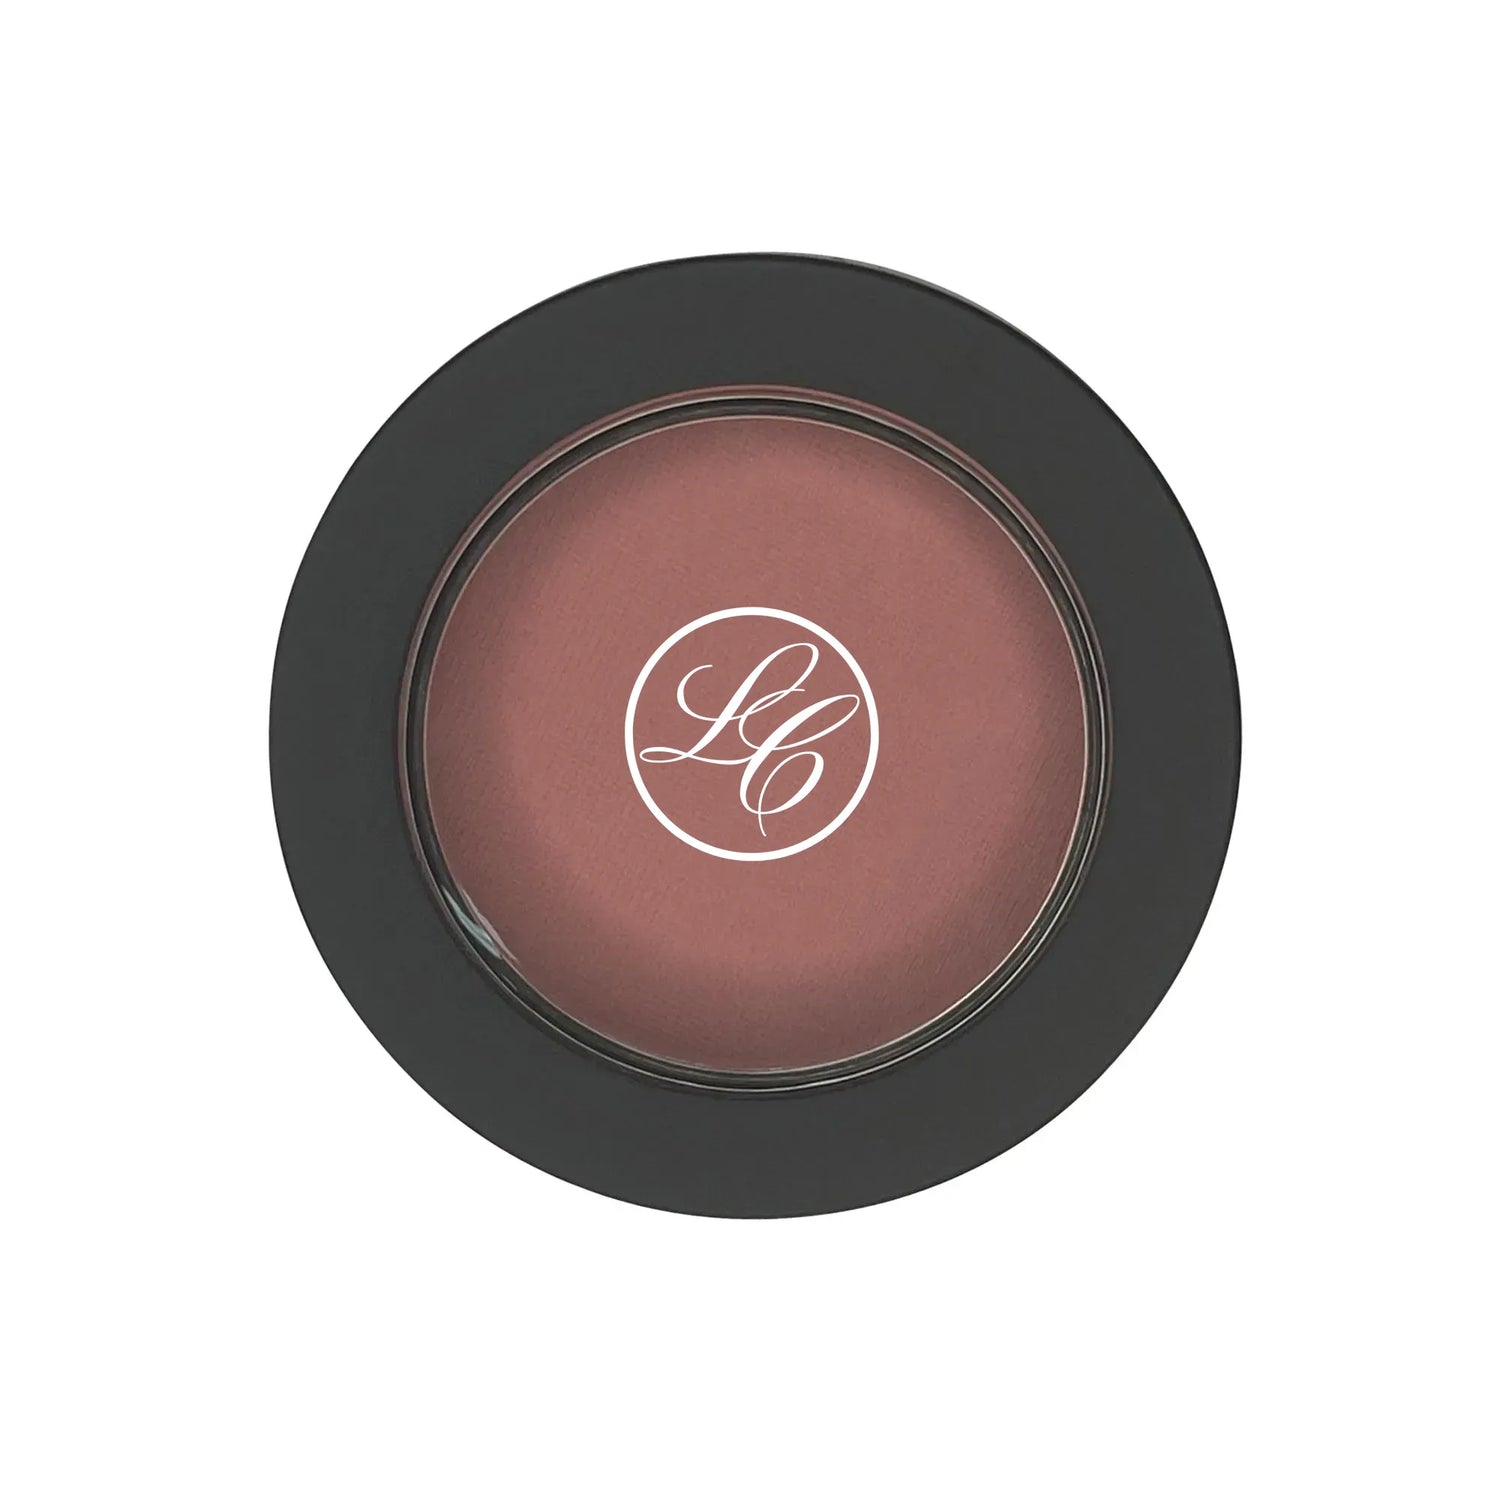 Single Pan Blush - Macaron - Lunox Cosmetics